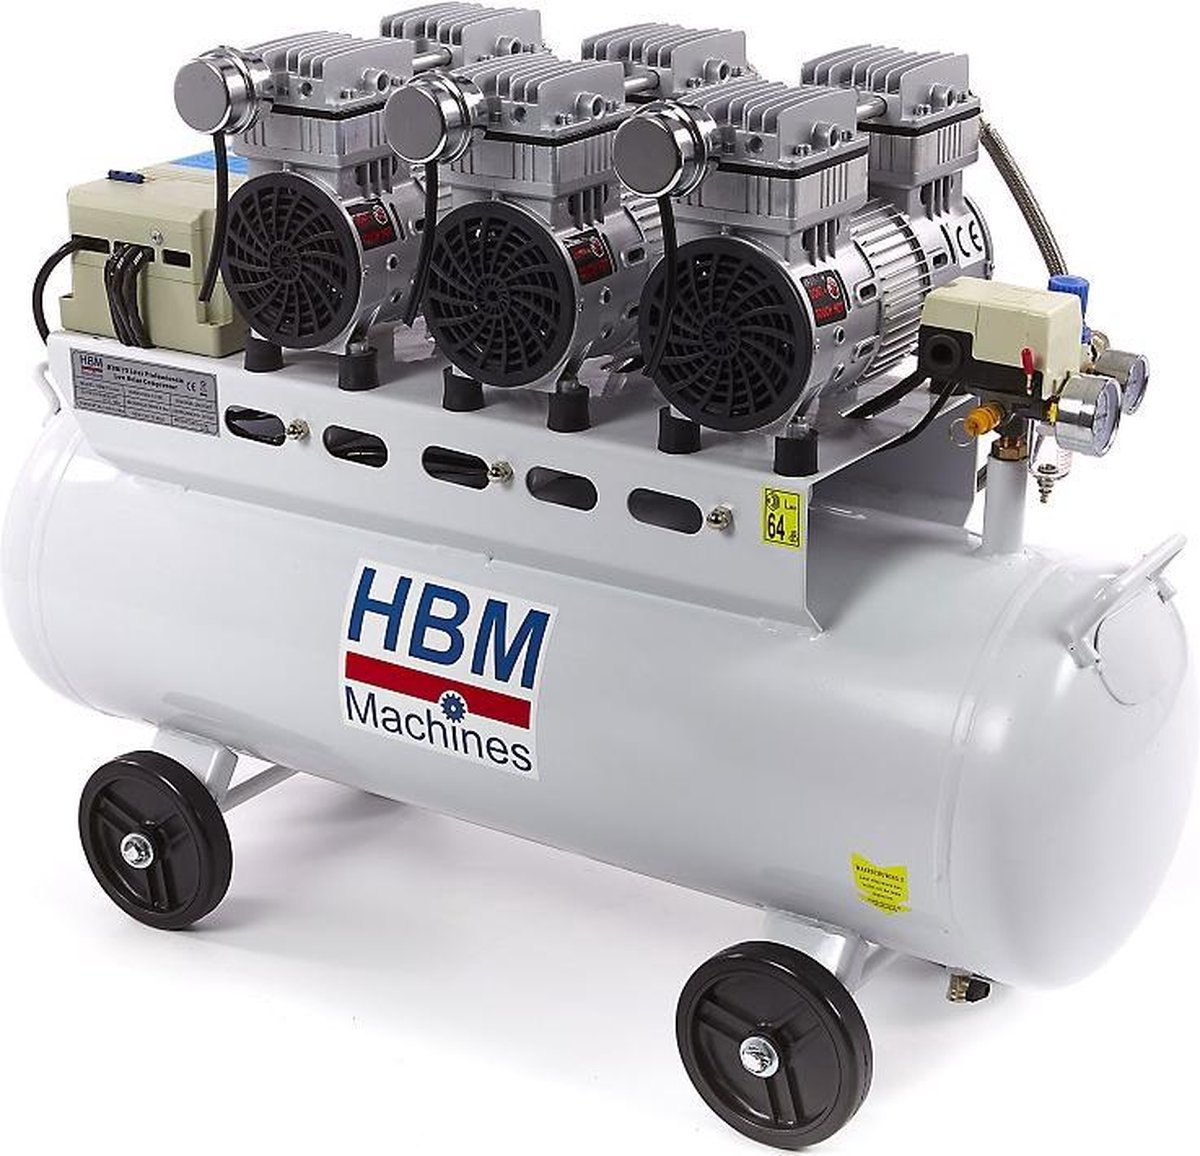 Maak plaats walgelijk flexibel HBM 70 Liter Professionele Low Noise Compressor | bol.com